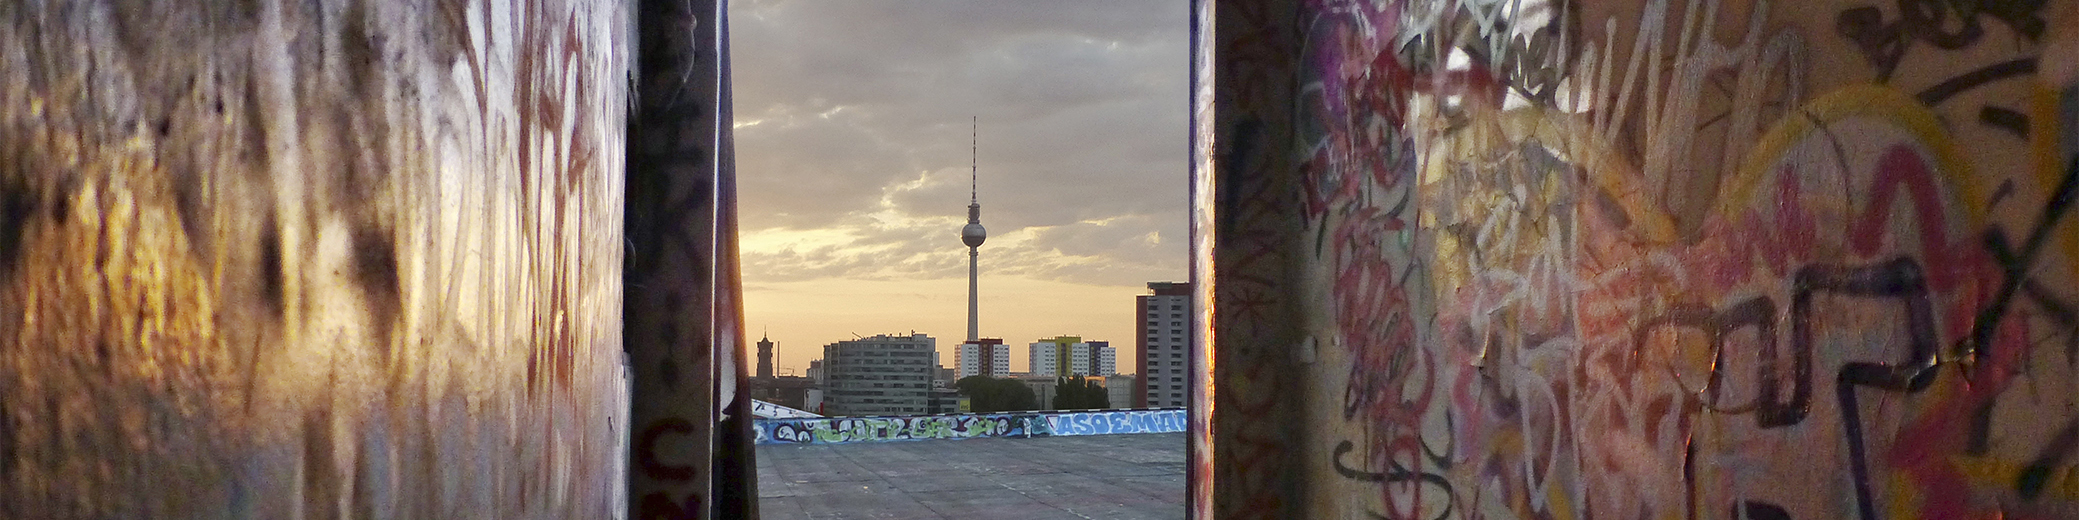 Fernseheturm von Berlin fotografiert von der Dach eine Alte verlassene Seifefabrik